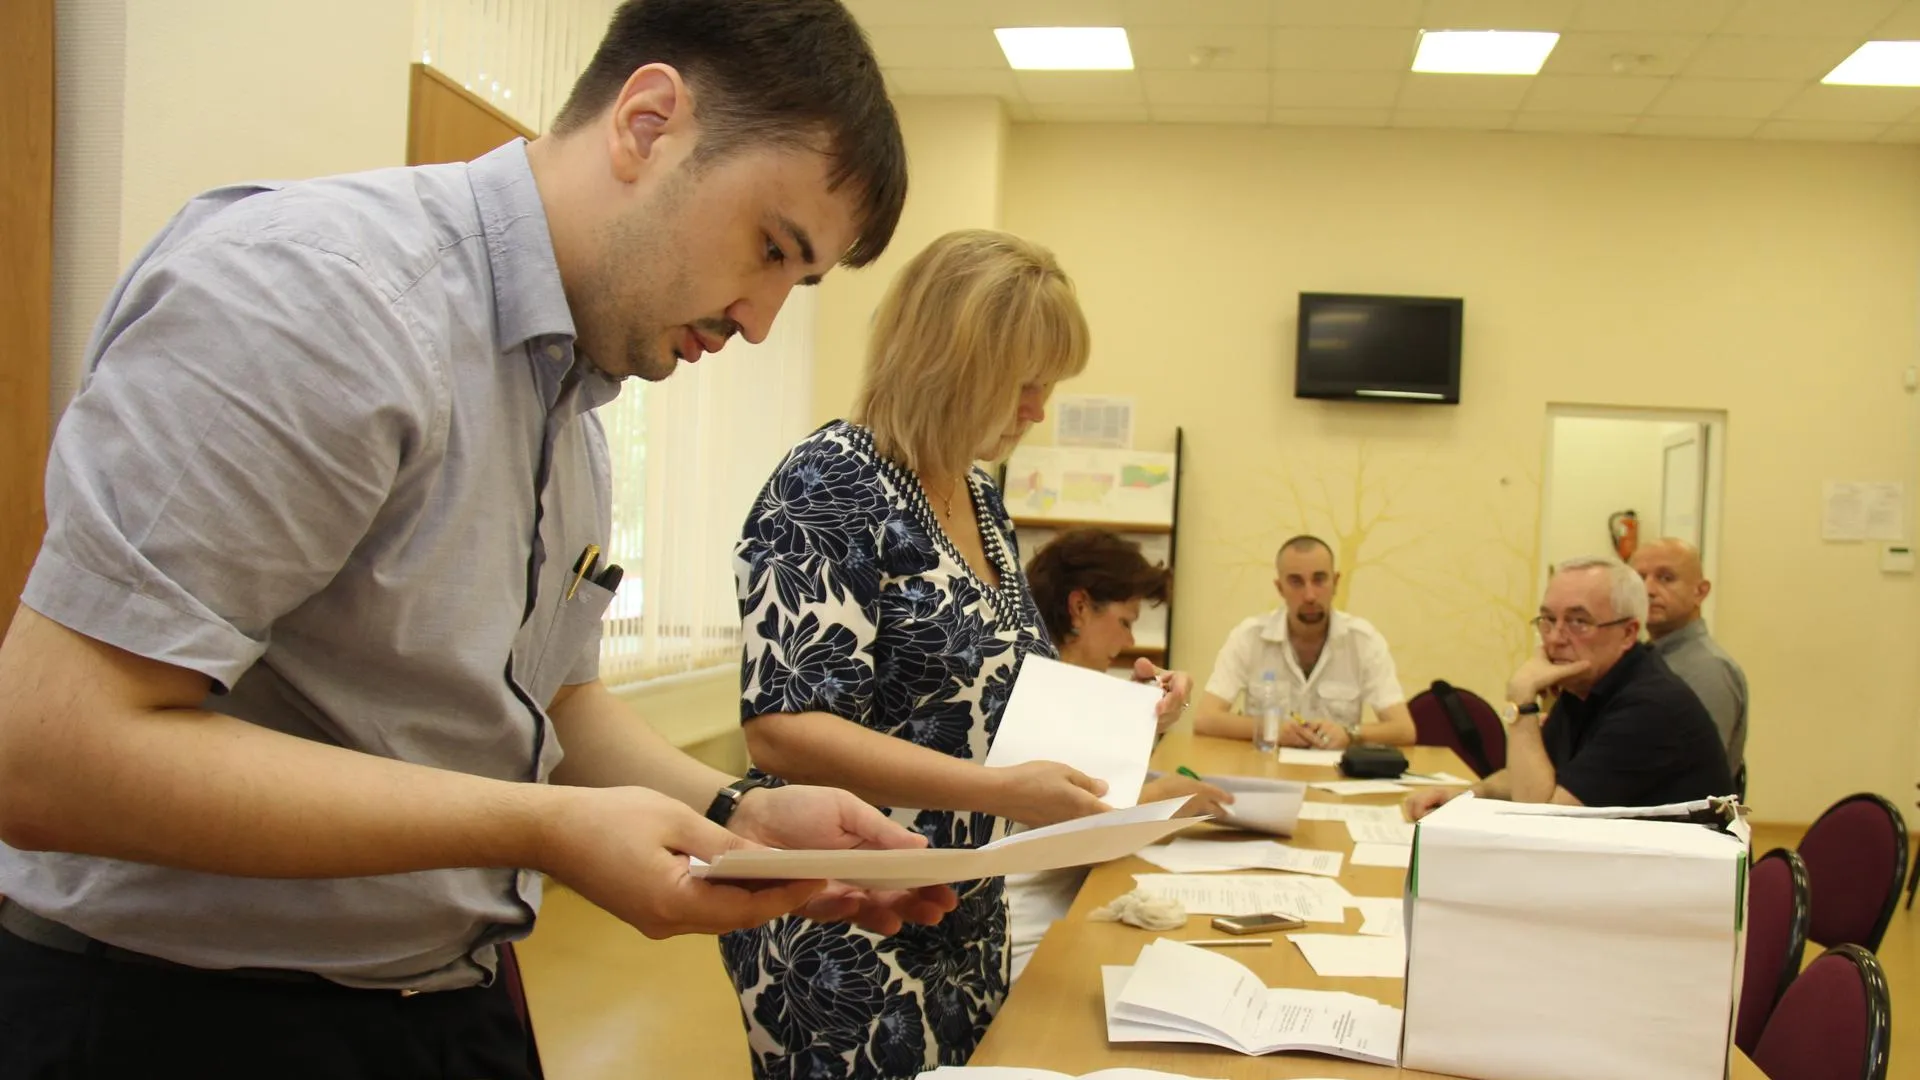 ЦИК РФ создаст наблюдателям благоприятные условия для работы на выборах